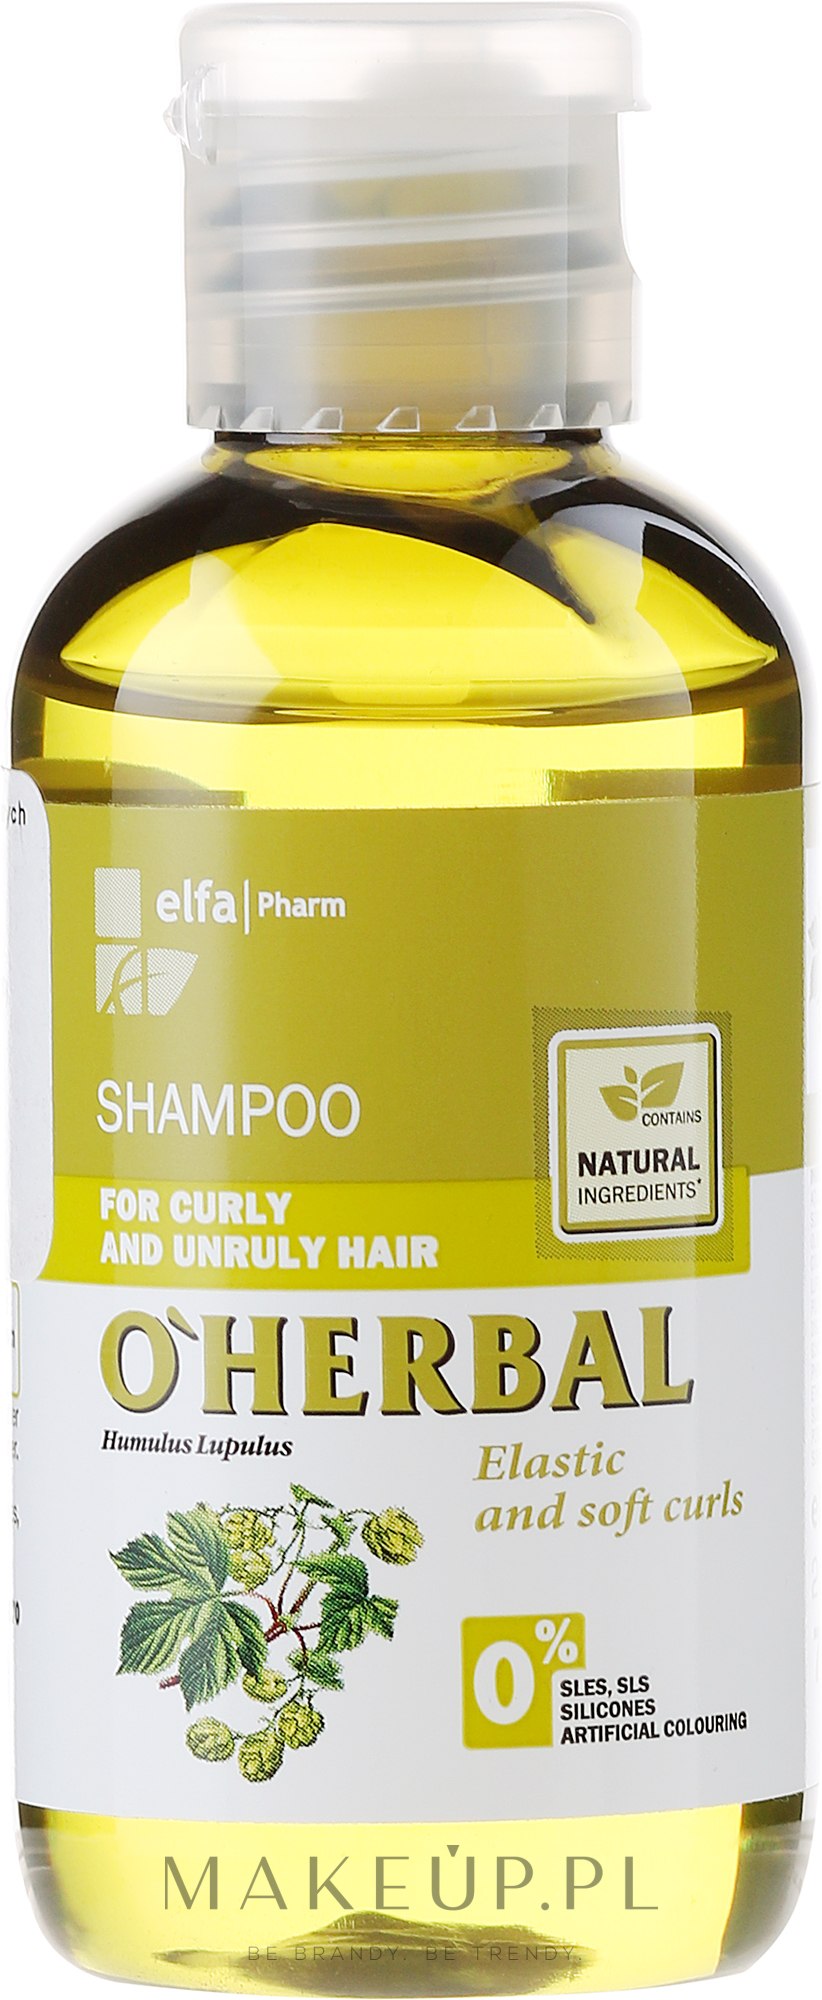 szampon do włosów kręcoych oherbal ph